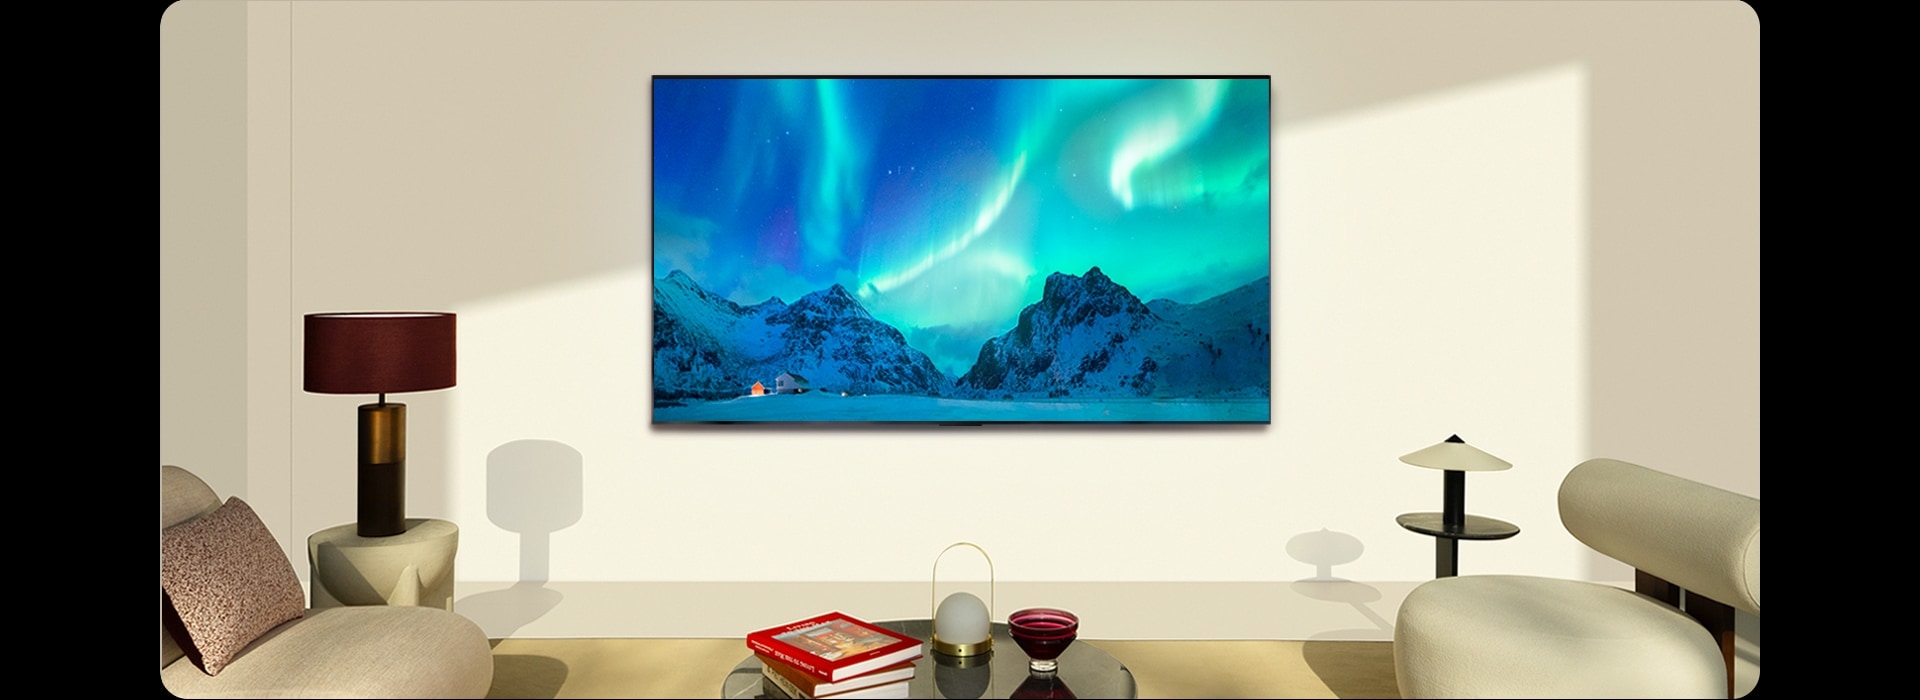 Una imagen de un televisor LG OLED y una barra de sonido LG en un espacio moderno durante el día. La imagen de la aurora boreal se muestra con los niveles de brillo ideales.